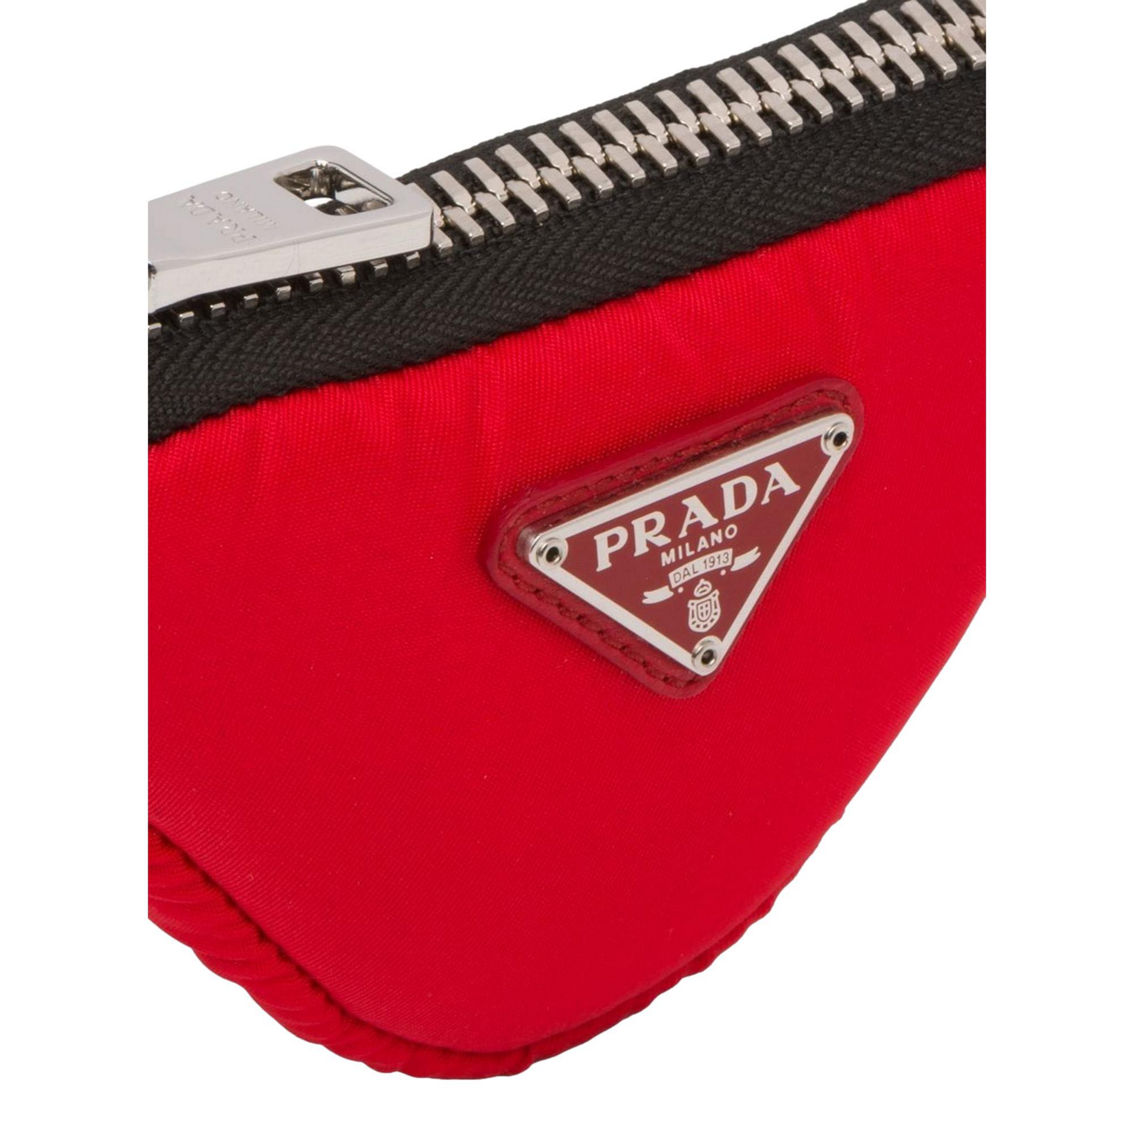 Prada Tessuto Red Nylon Cargo Mini Triangle Pouch on Lanyard Neck Bag (New) - Image 2 of 5